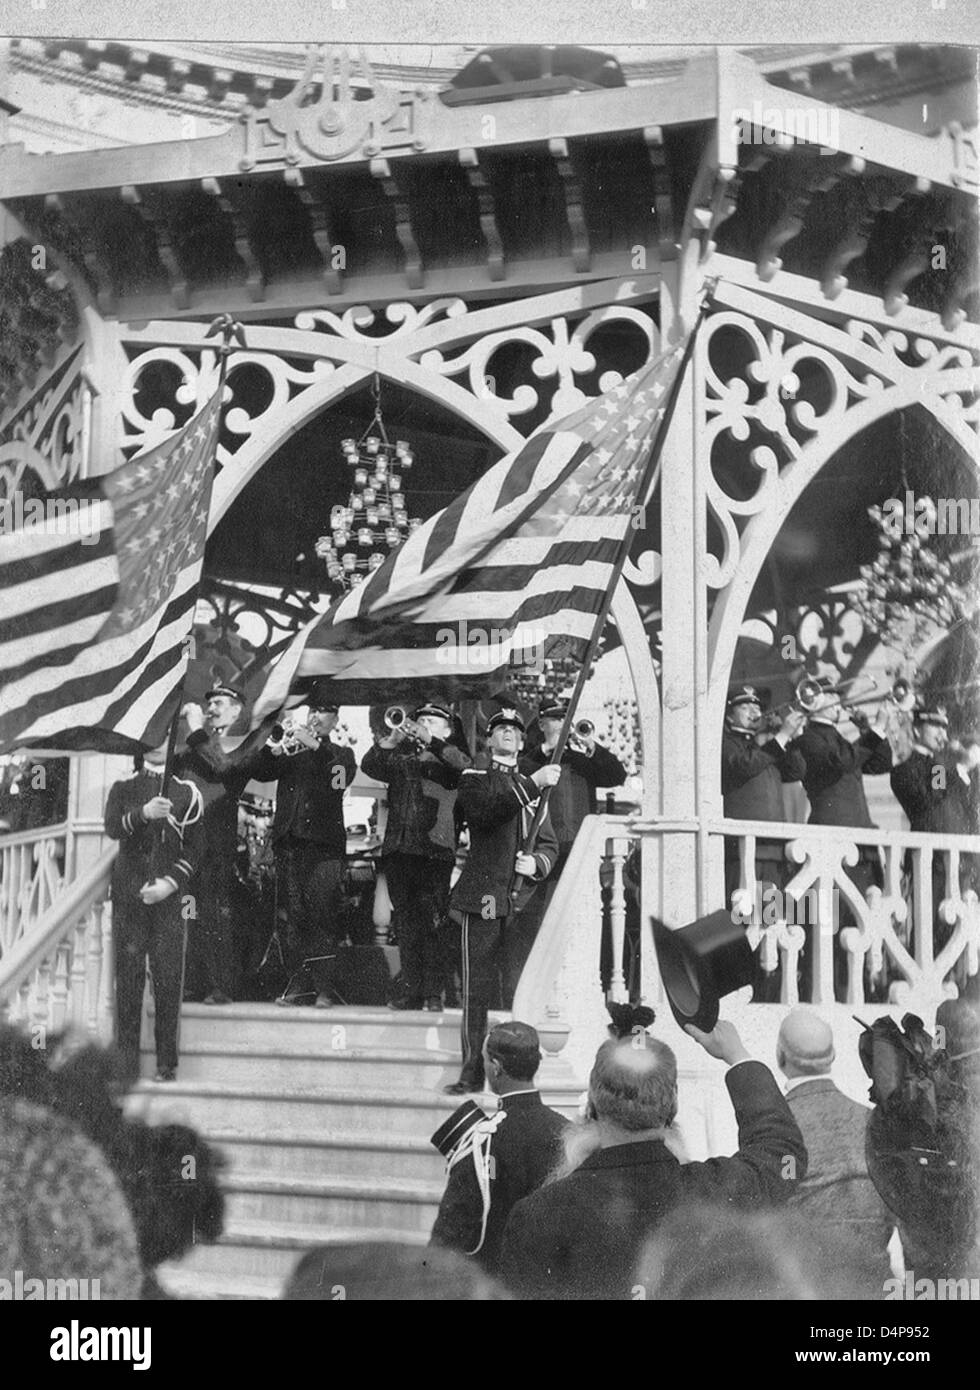 John Philip Sousa groupe jouant sur kiosque alors que deux membres de la bande se tenir sur des escaliers, agitant des drapeaux américains - Exposition de Paris 1900 Banque D'Images